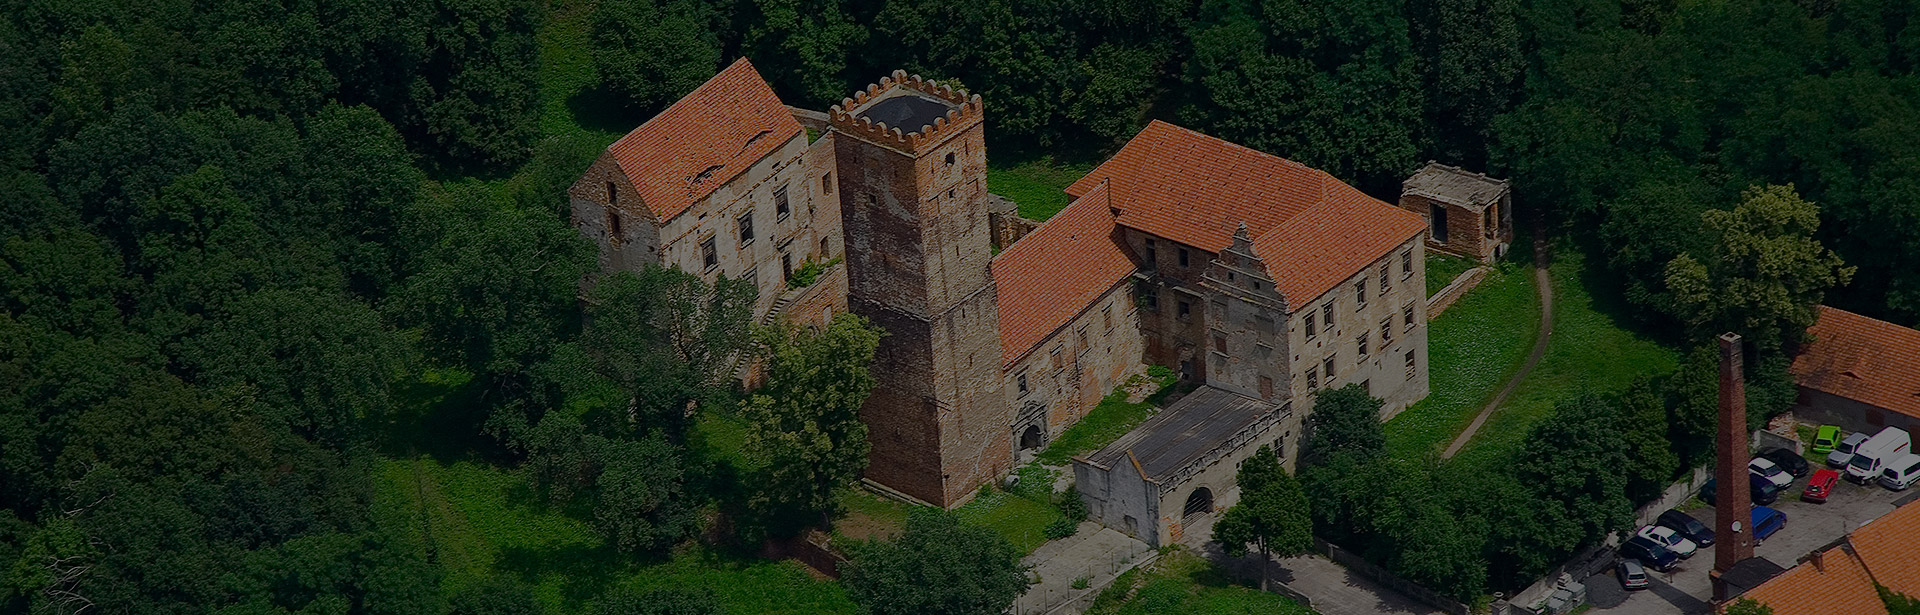 Zabytkowy zamek w Prochowicach